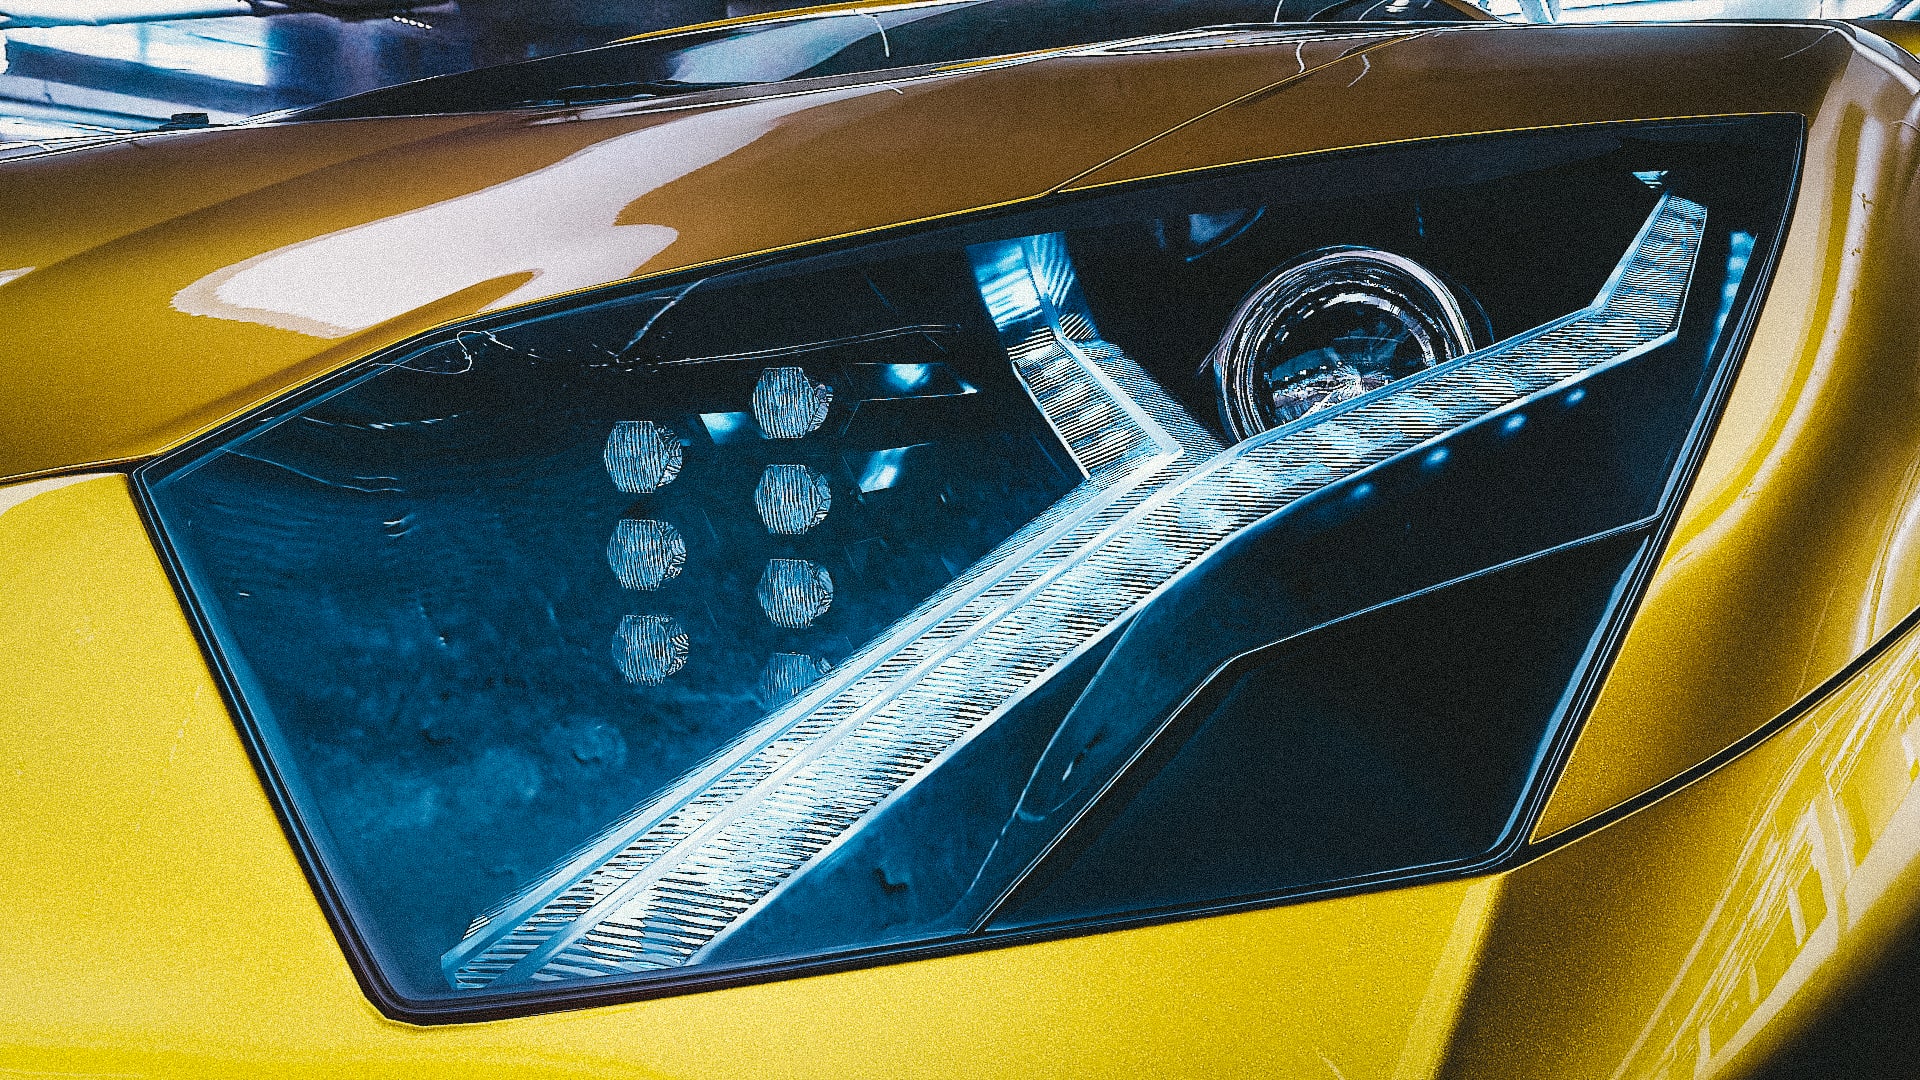 Lamborghini aventador in Blender cycles render immagine